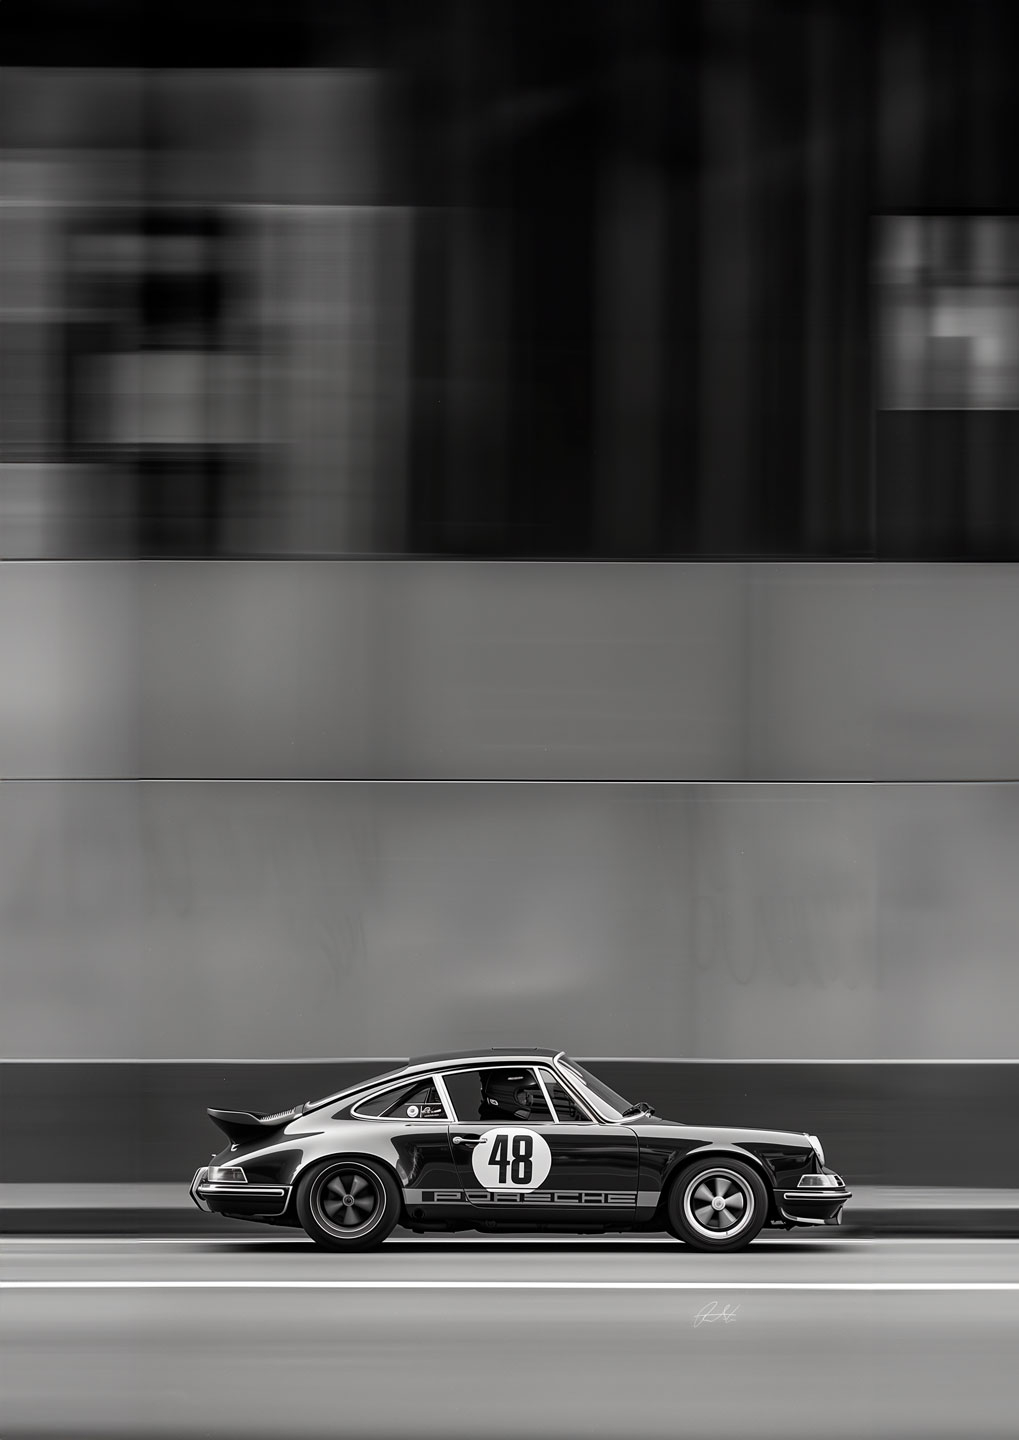 Billede af Porsche vers. 01 af Rasmus Lassen